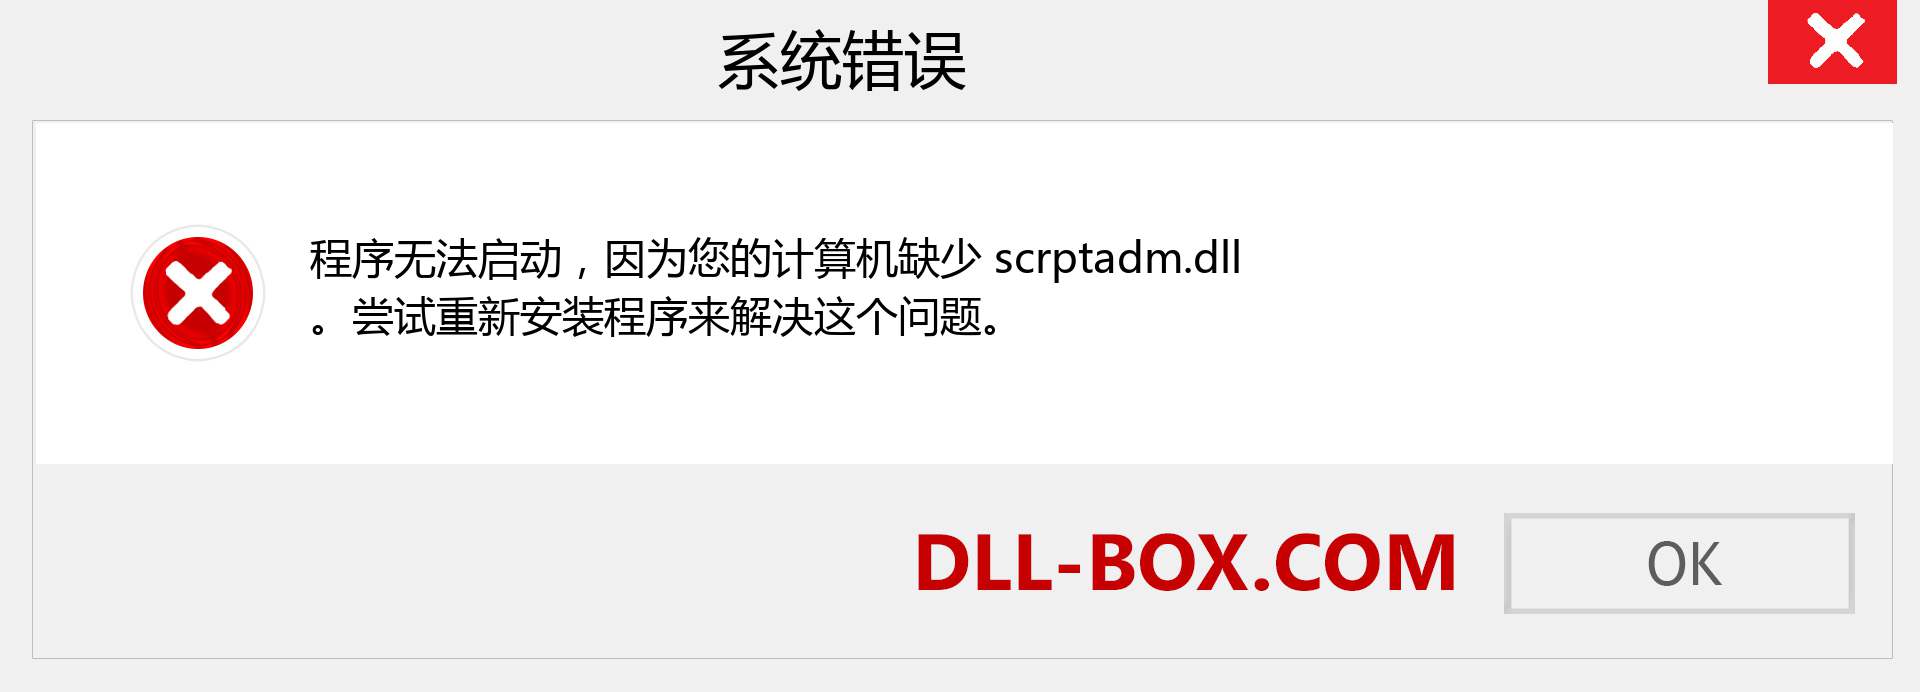 scrptadm.dll 文件丢失？。 适用于 Windows 7、8、10 的下载 - 修复 Windows、照片、图像上的 scrptadm dll 丢失错误